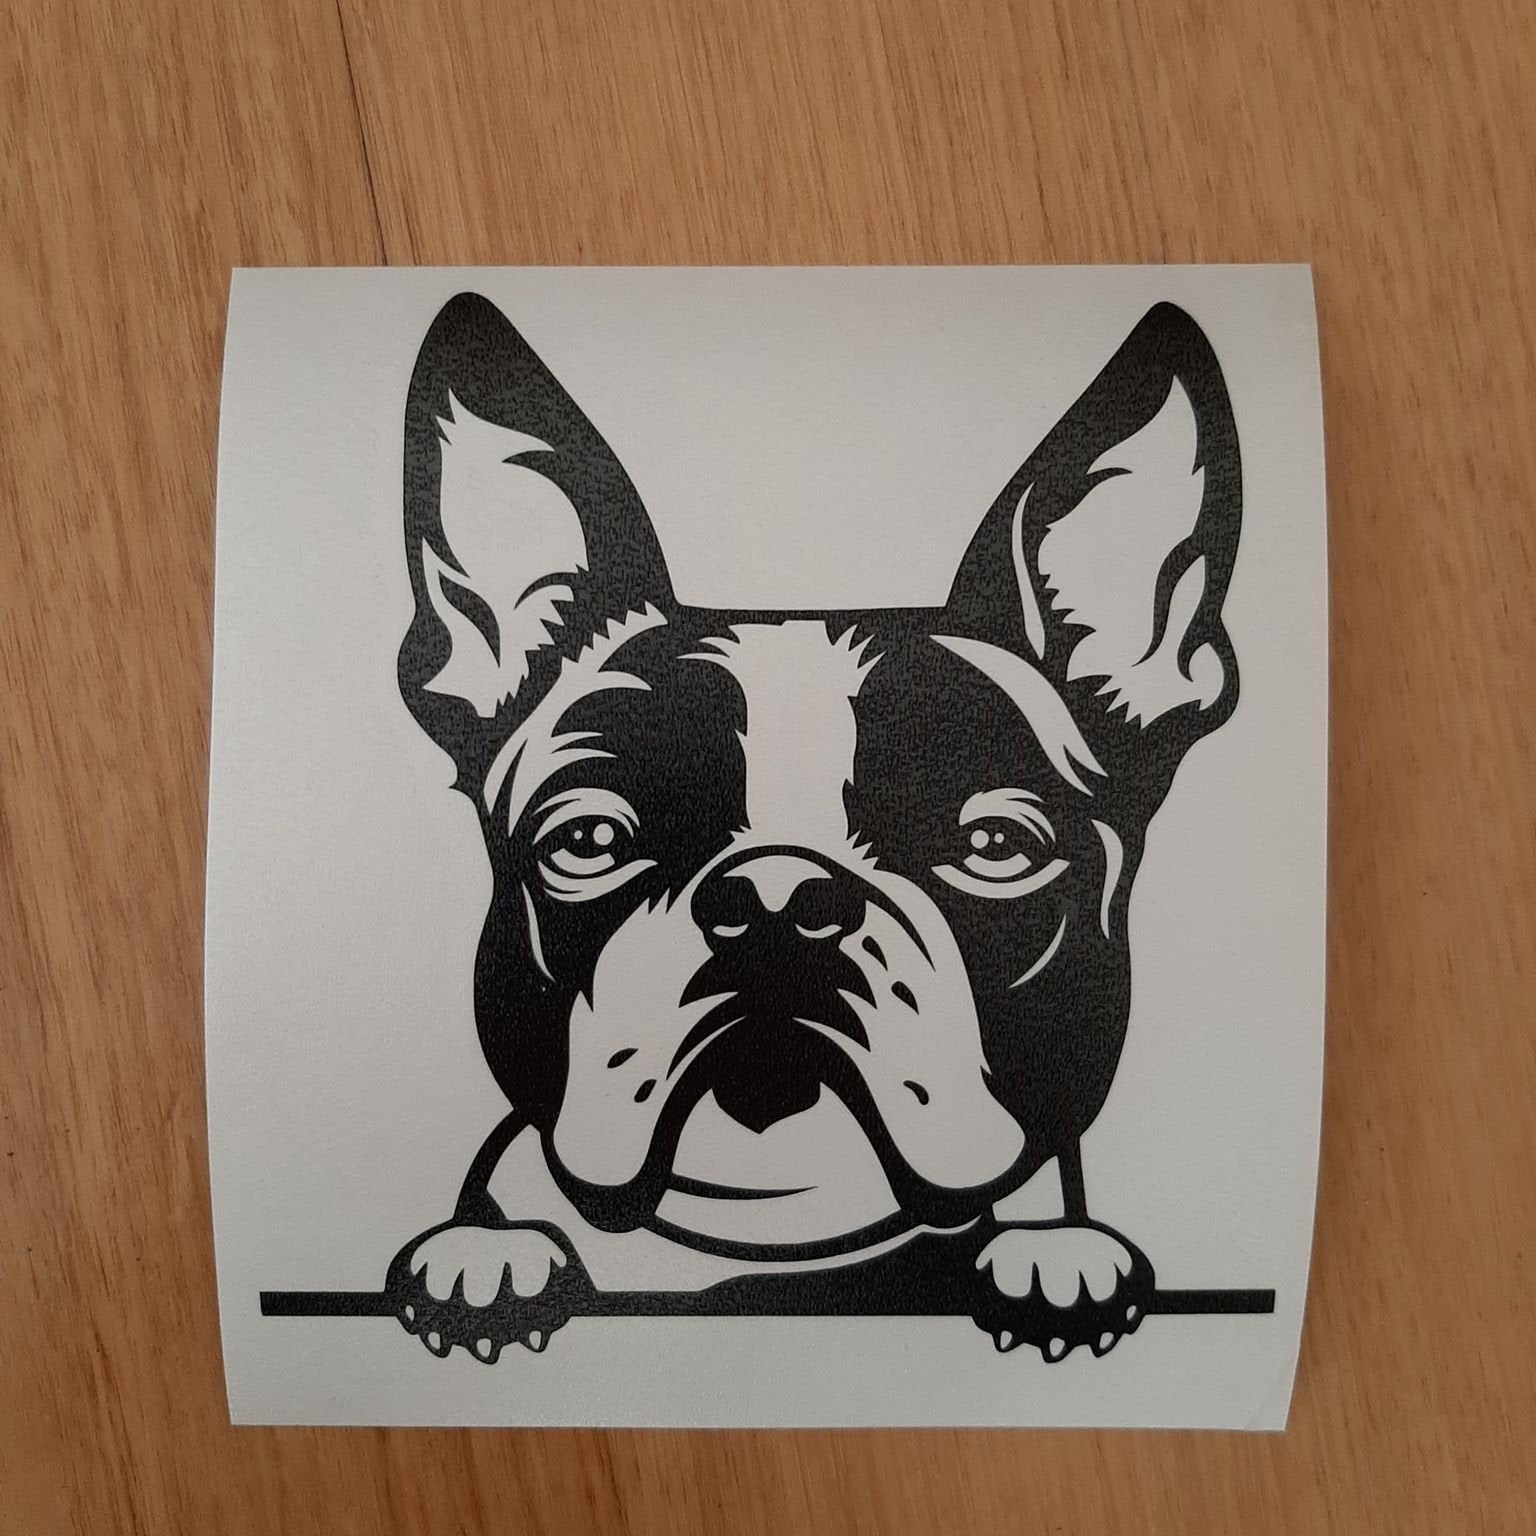 Peeking Boston Terrier Car Sticker - My Crafty Dog